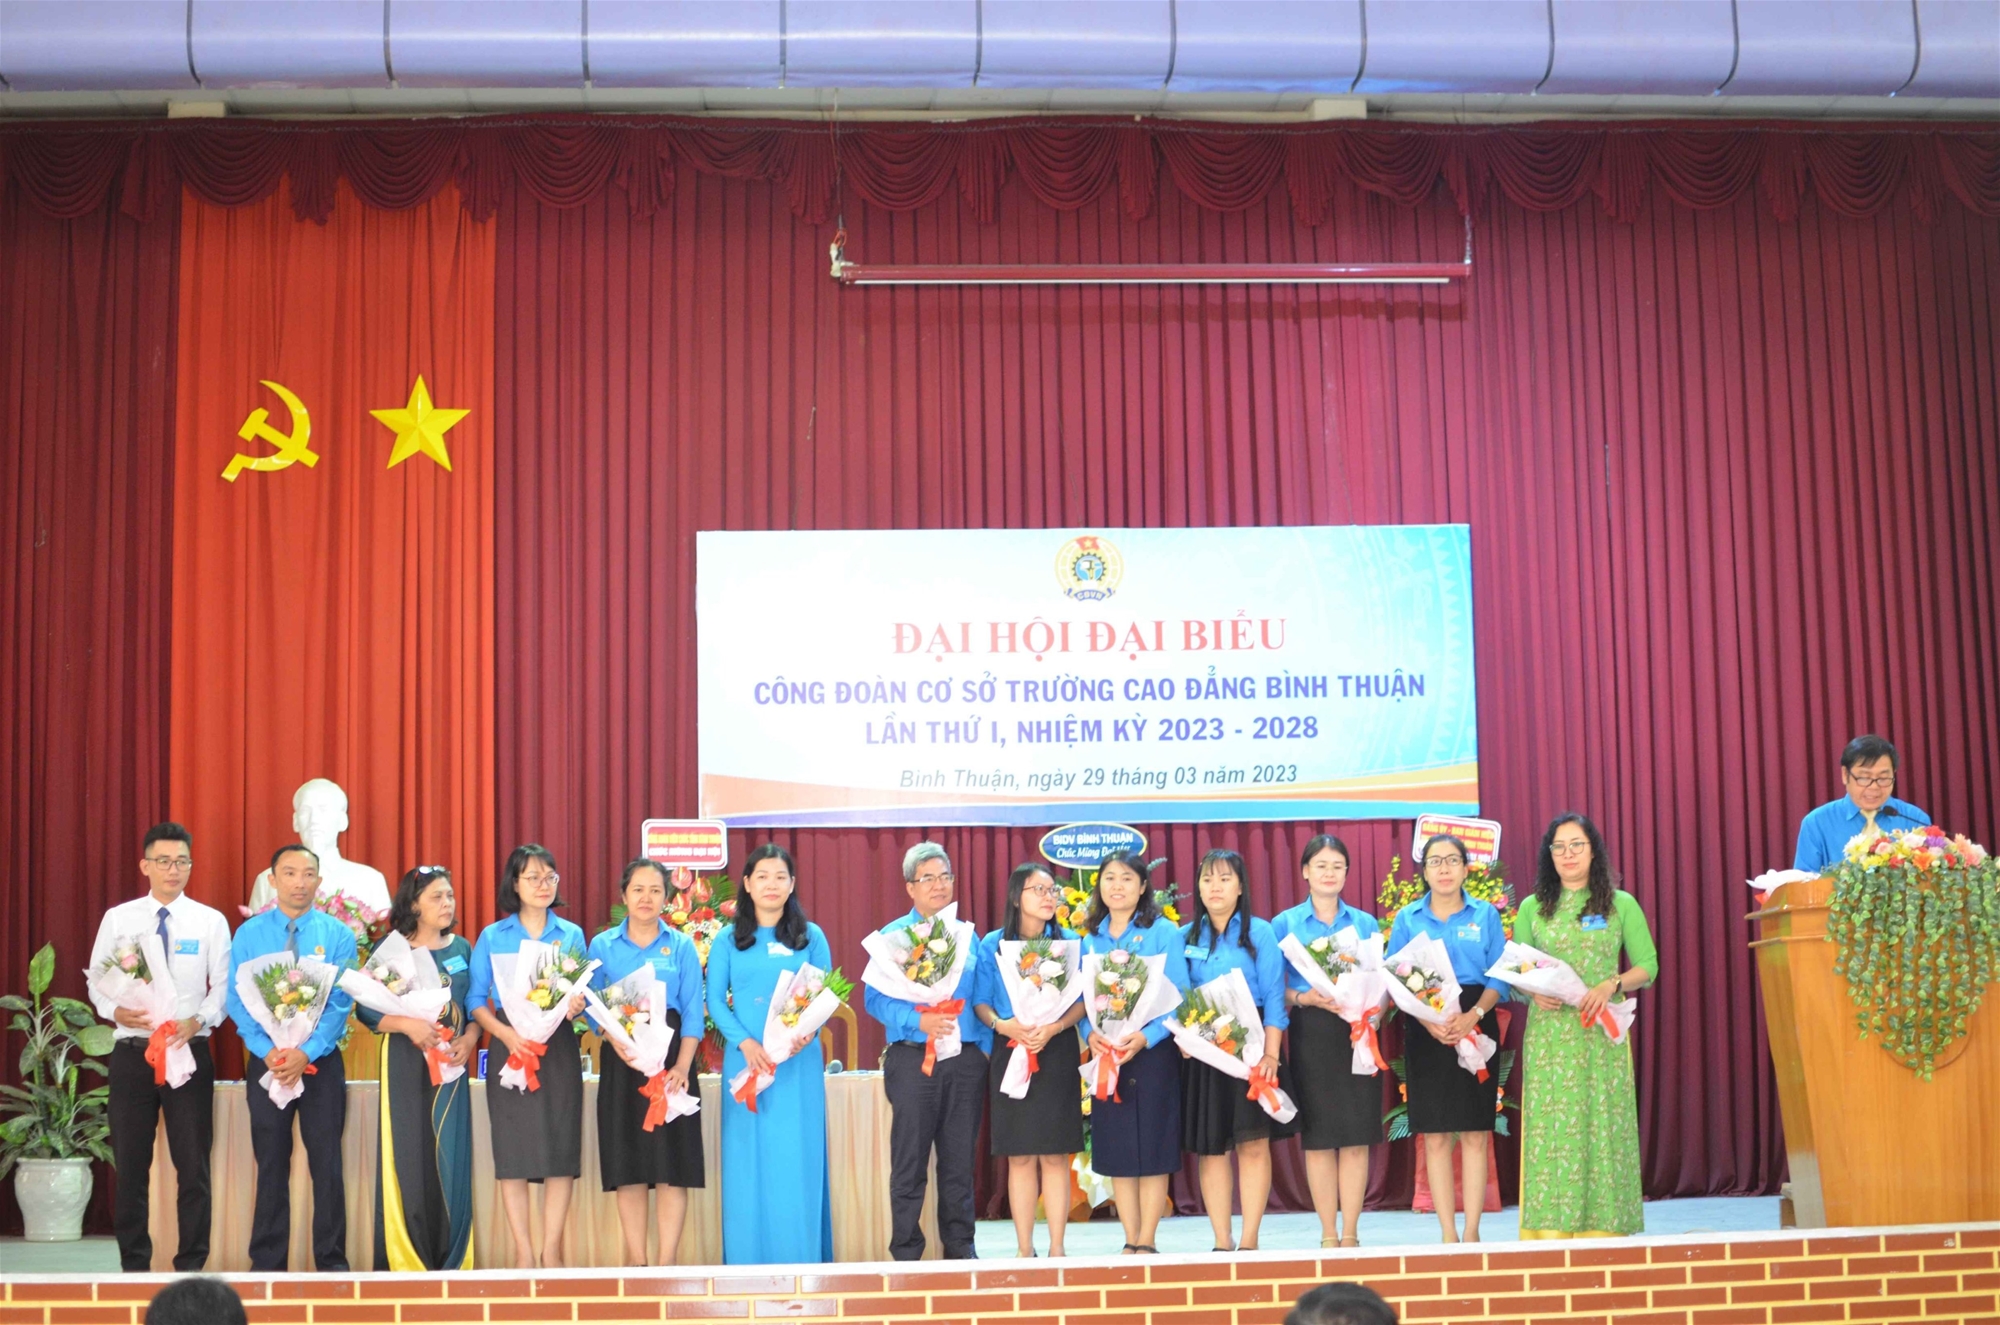 Đại hội Đại biểu Công đoàn cơ sở Trường Cao đẳng Bình Thuận – Lần thứ I, Nhiệm kỳ 2023-2028